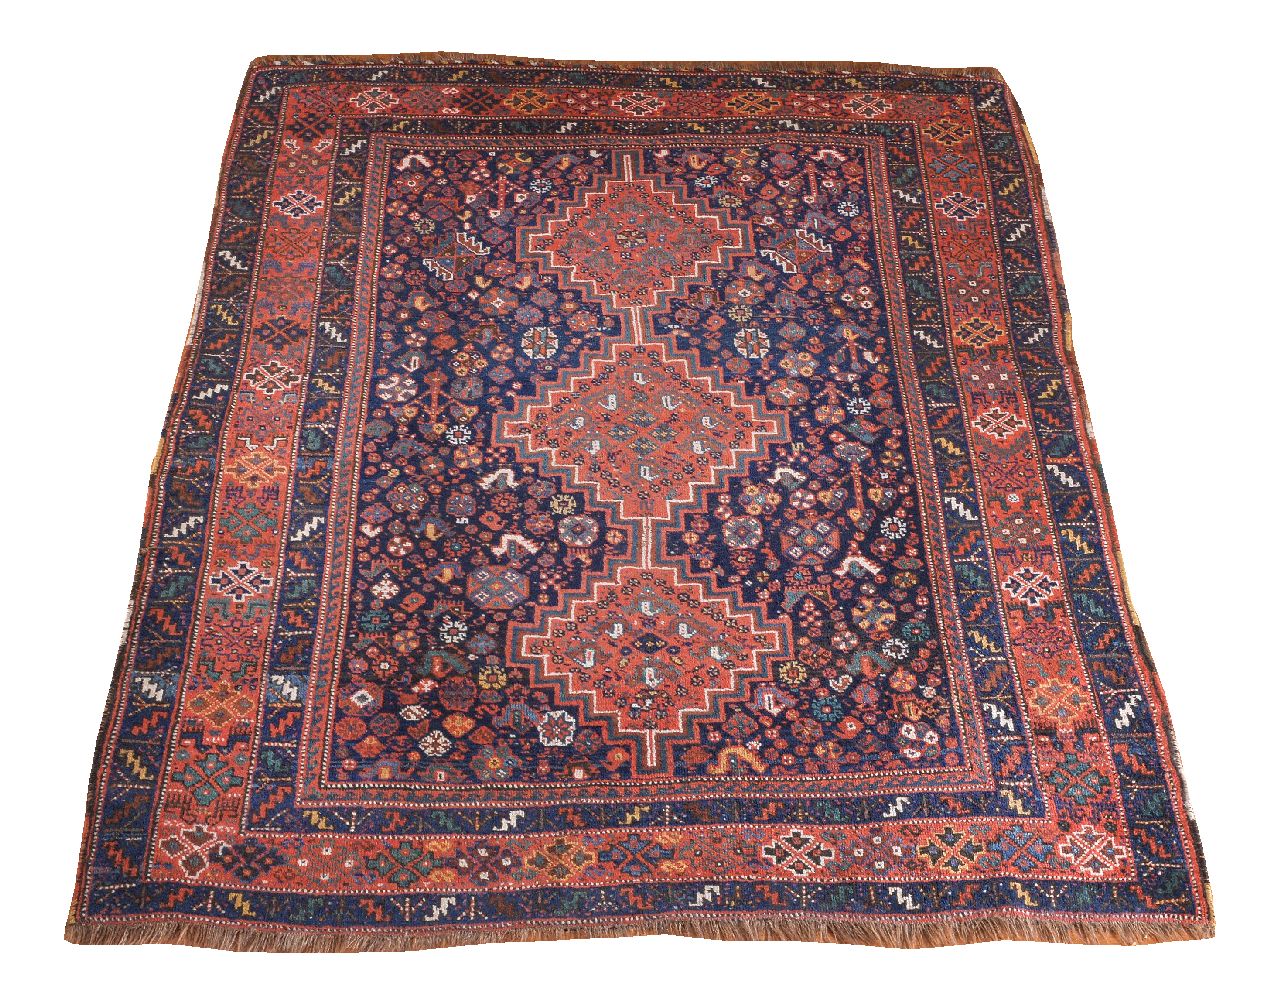 A Shiraz rug